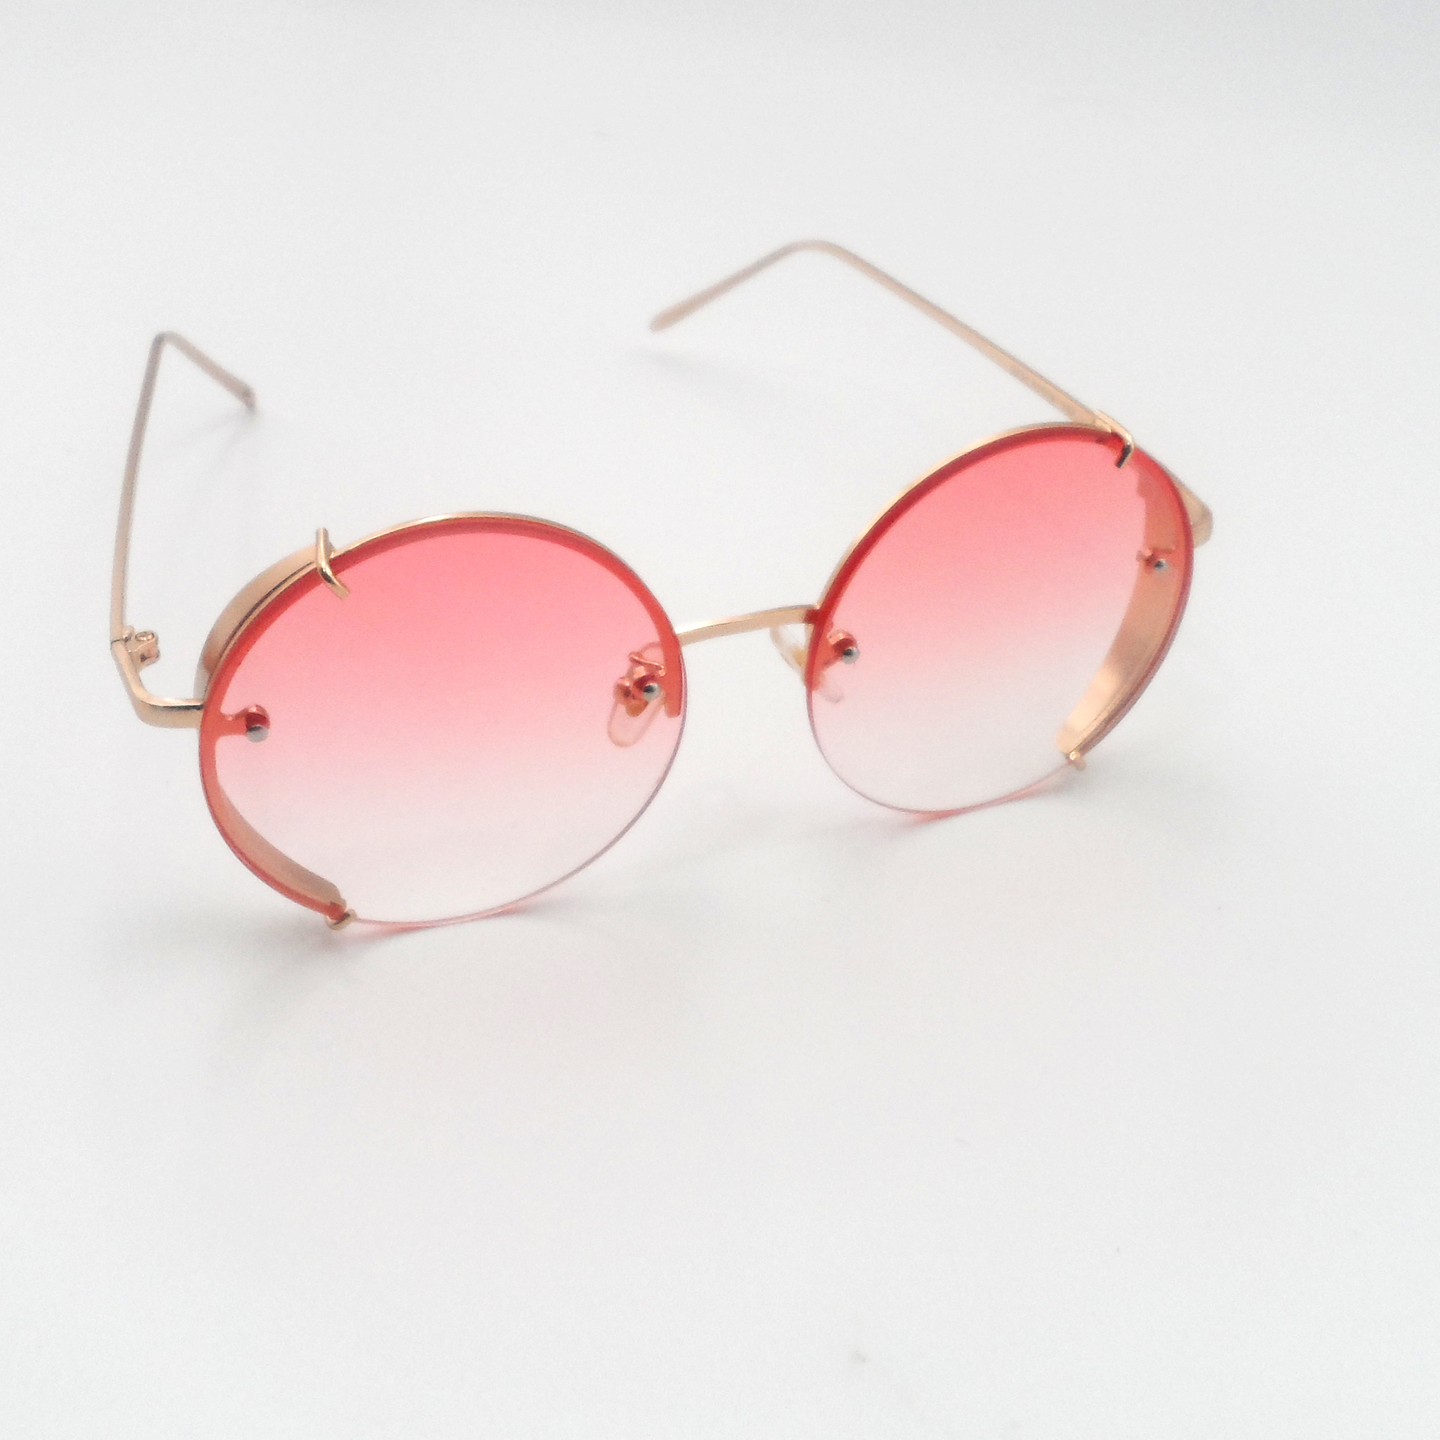 Retro 60's Circular Fashion Sunglasses